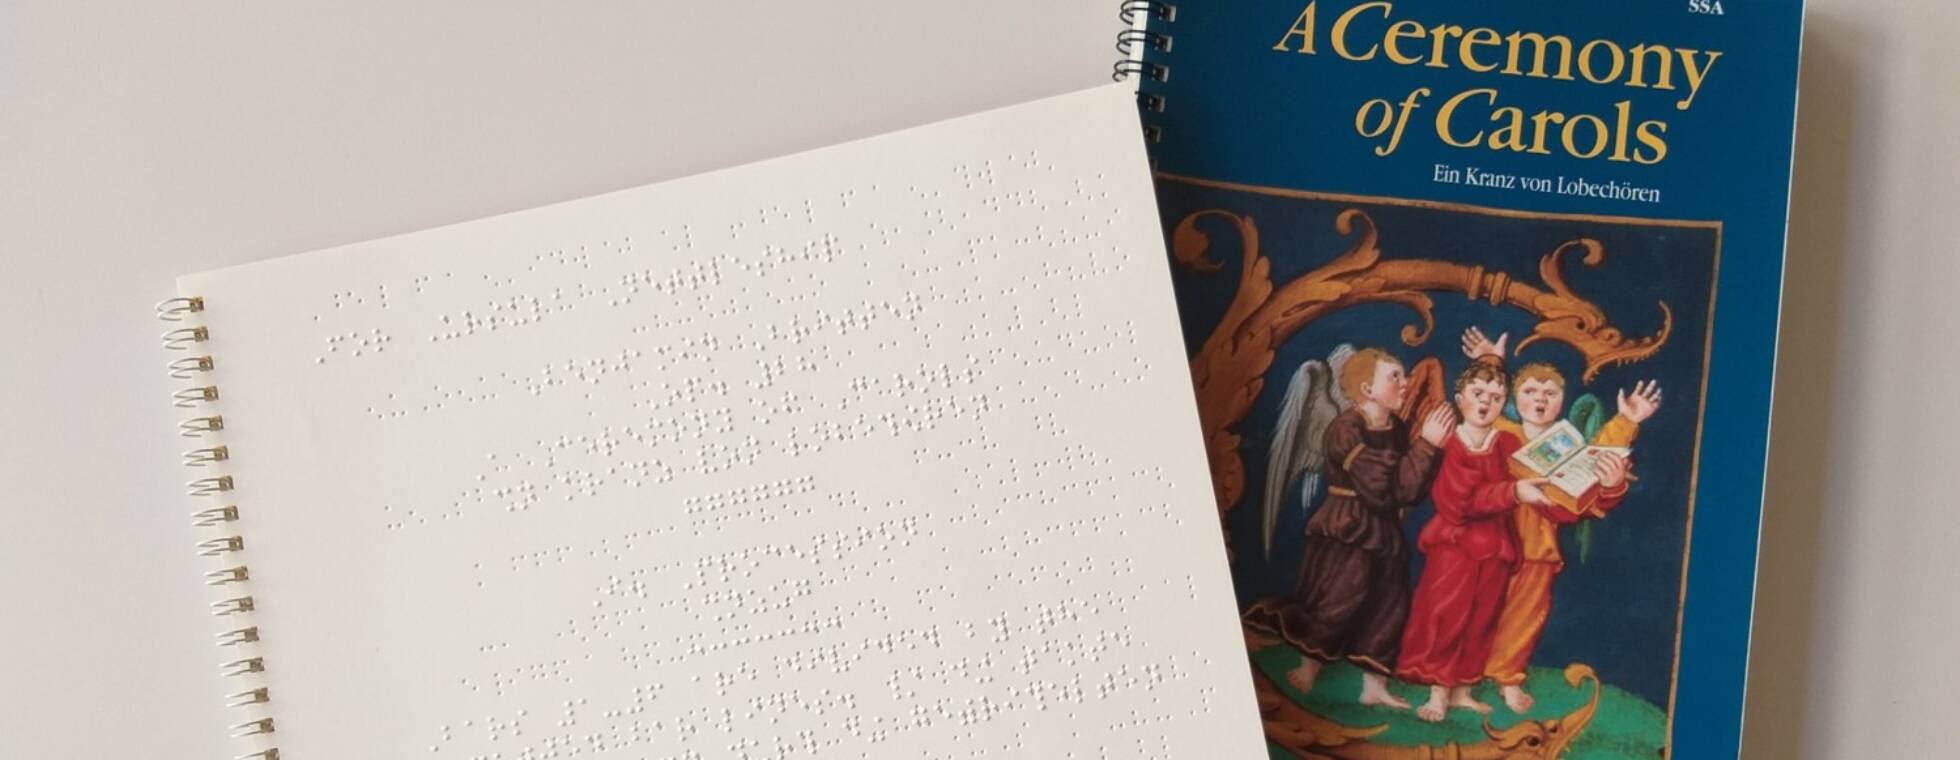 Foto: Links Auszug des ersten Satzes Procession in Braillenoten, rechts Cover des Schwarzdruck-Titels A Ceremony of Carols von Banjamin Britten